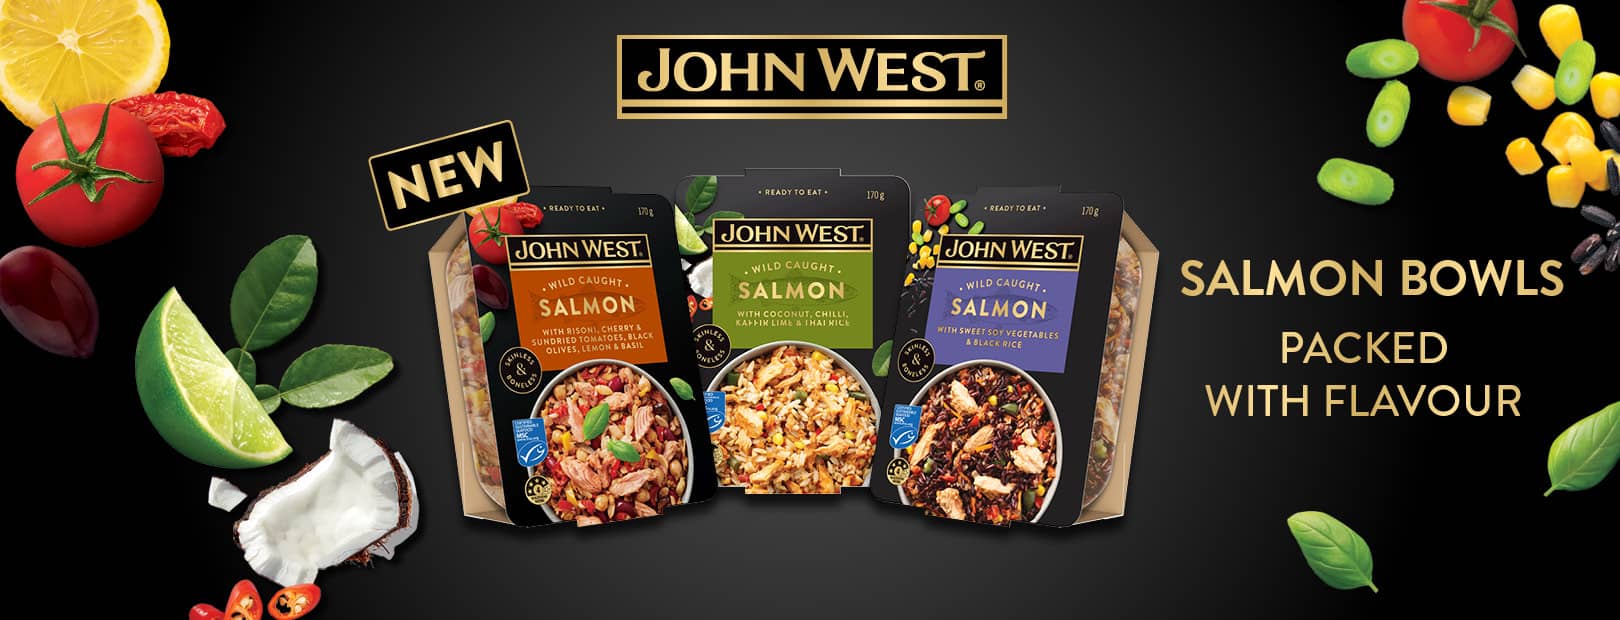 John West Salmon Bowls